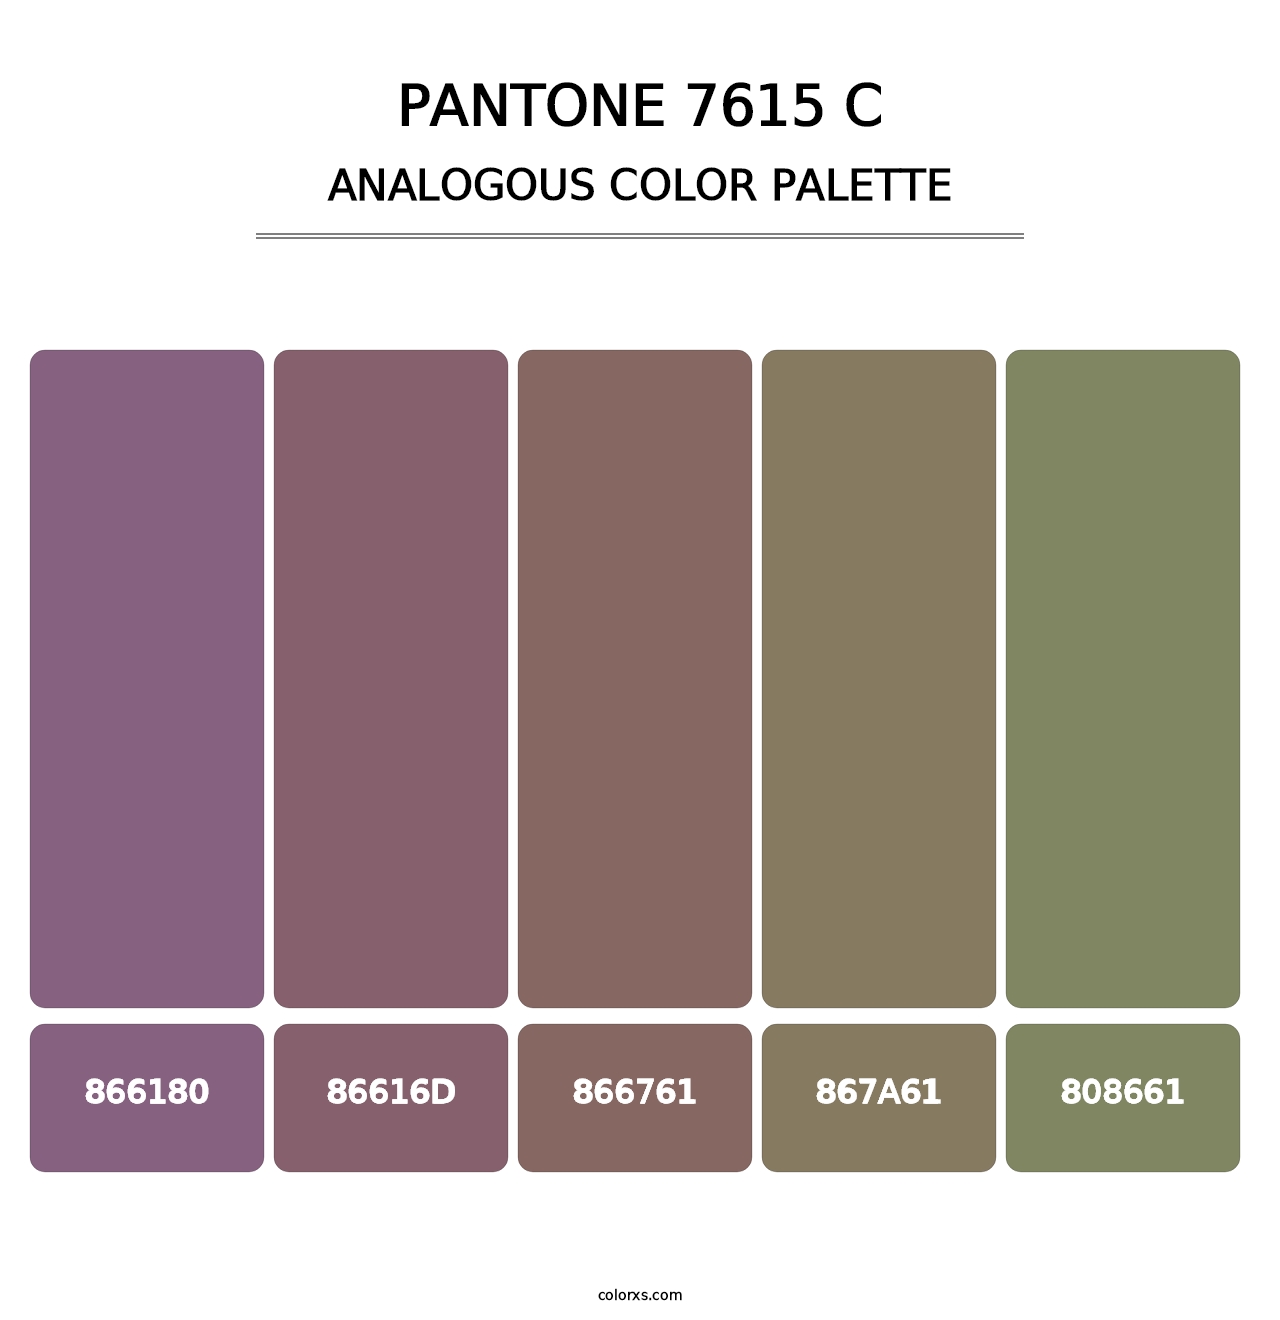 PANTONE 7615 C - Analogous Color Palette